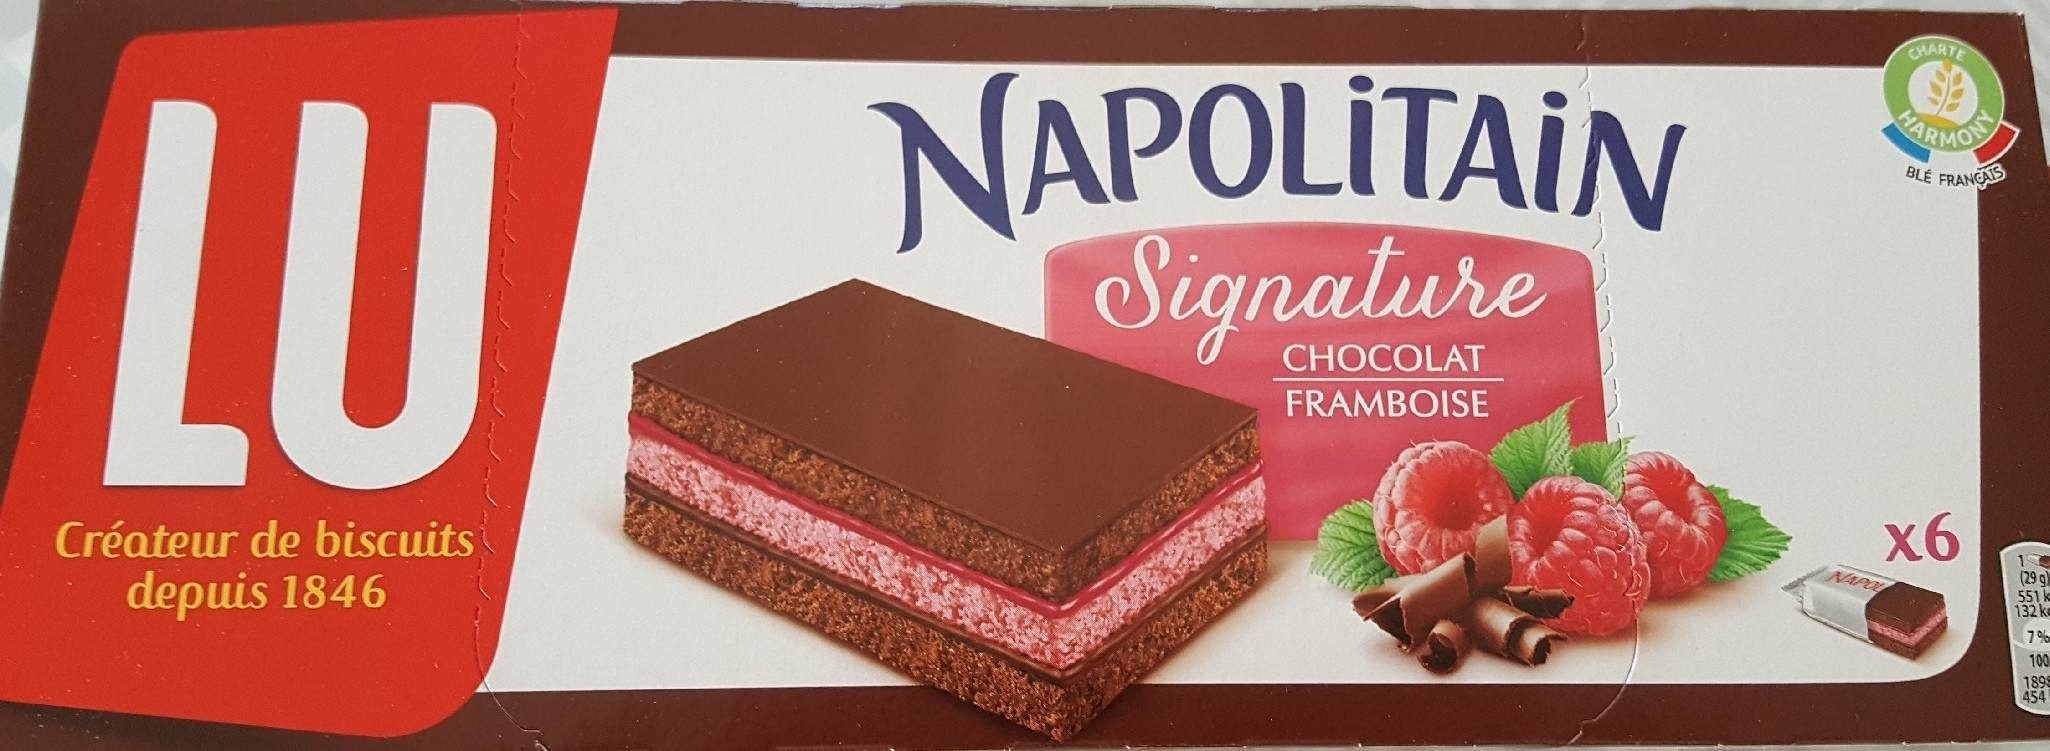 Napolitain Signature Chocolat Framboise - Product - fr